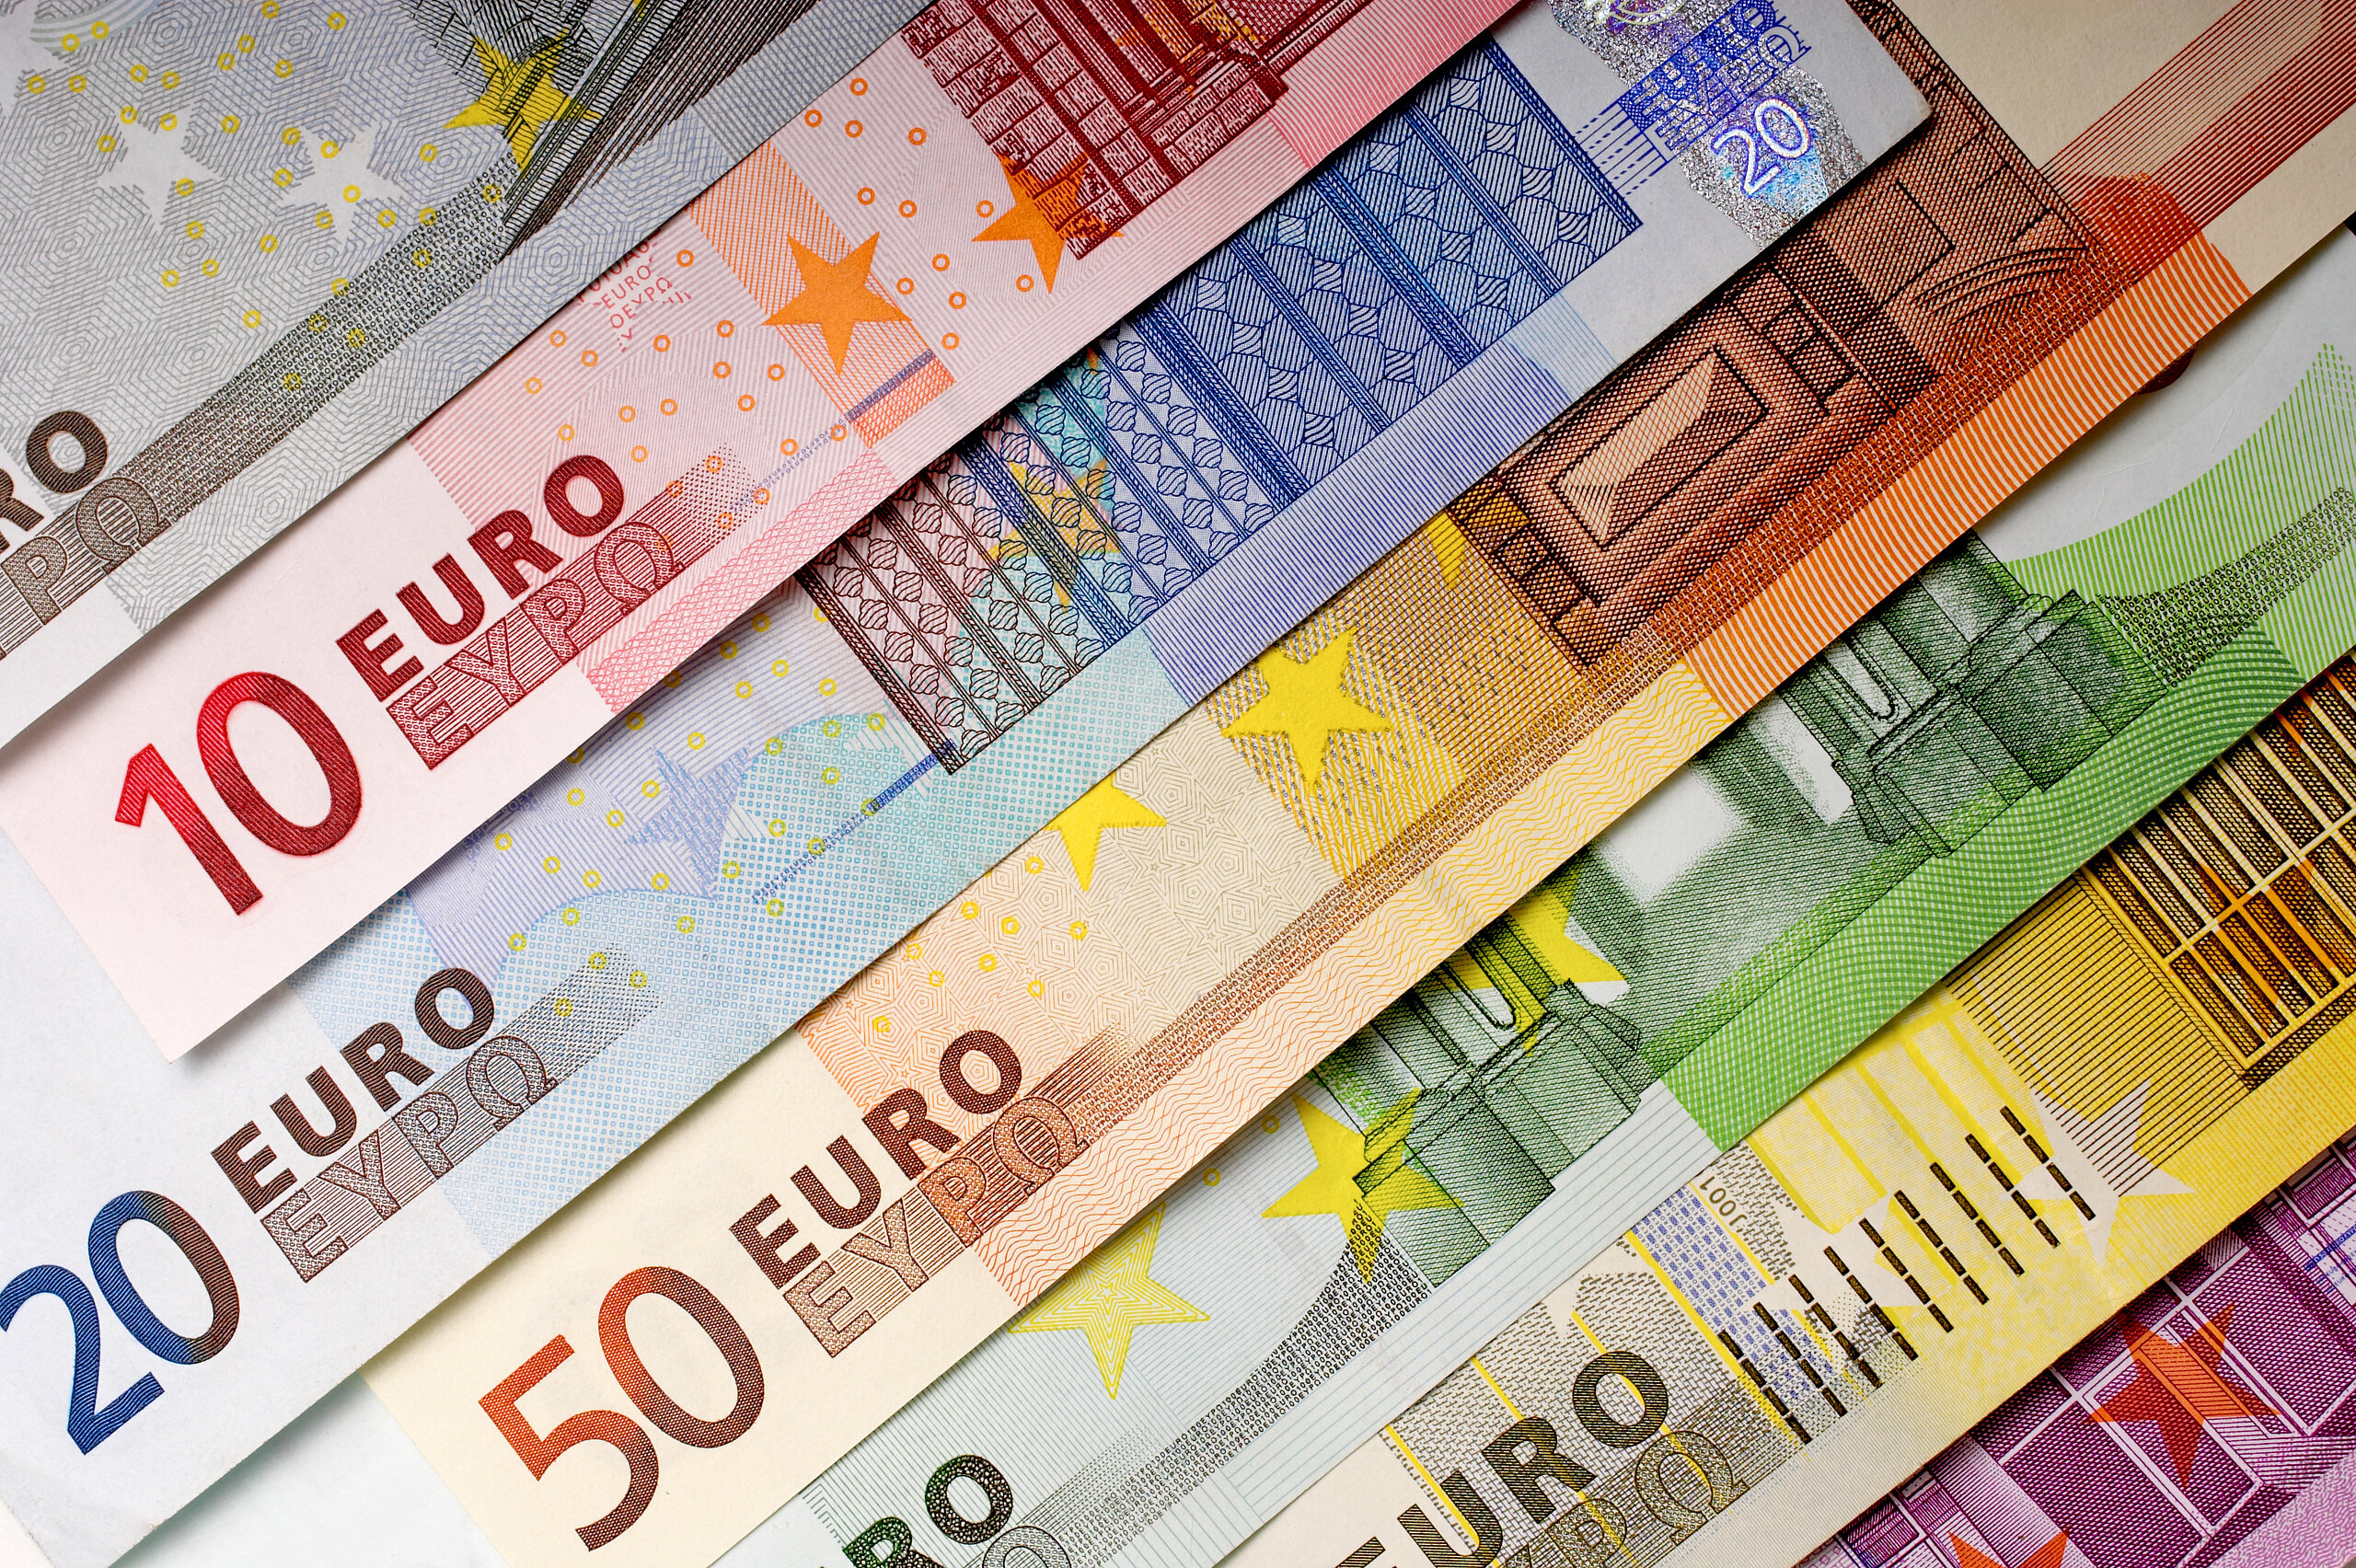 Close-up of Euro banknotes